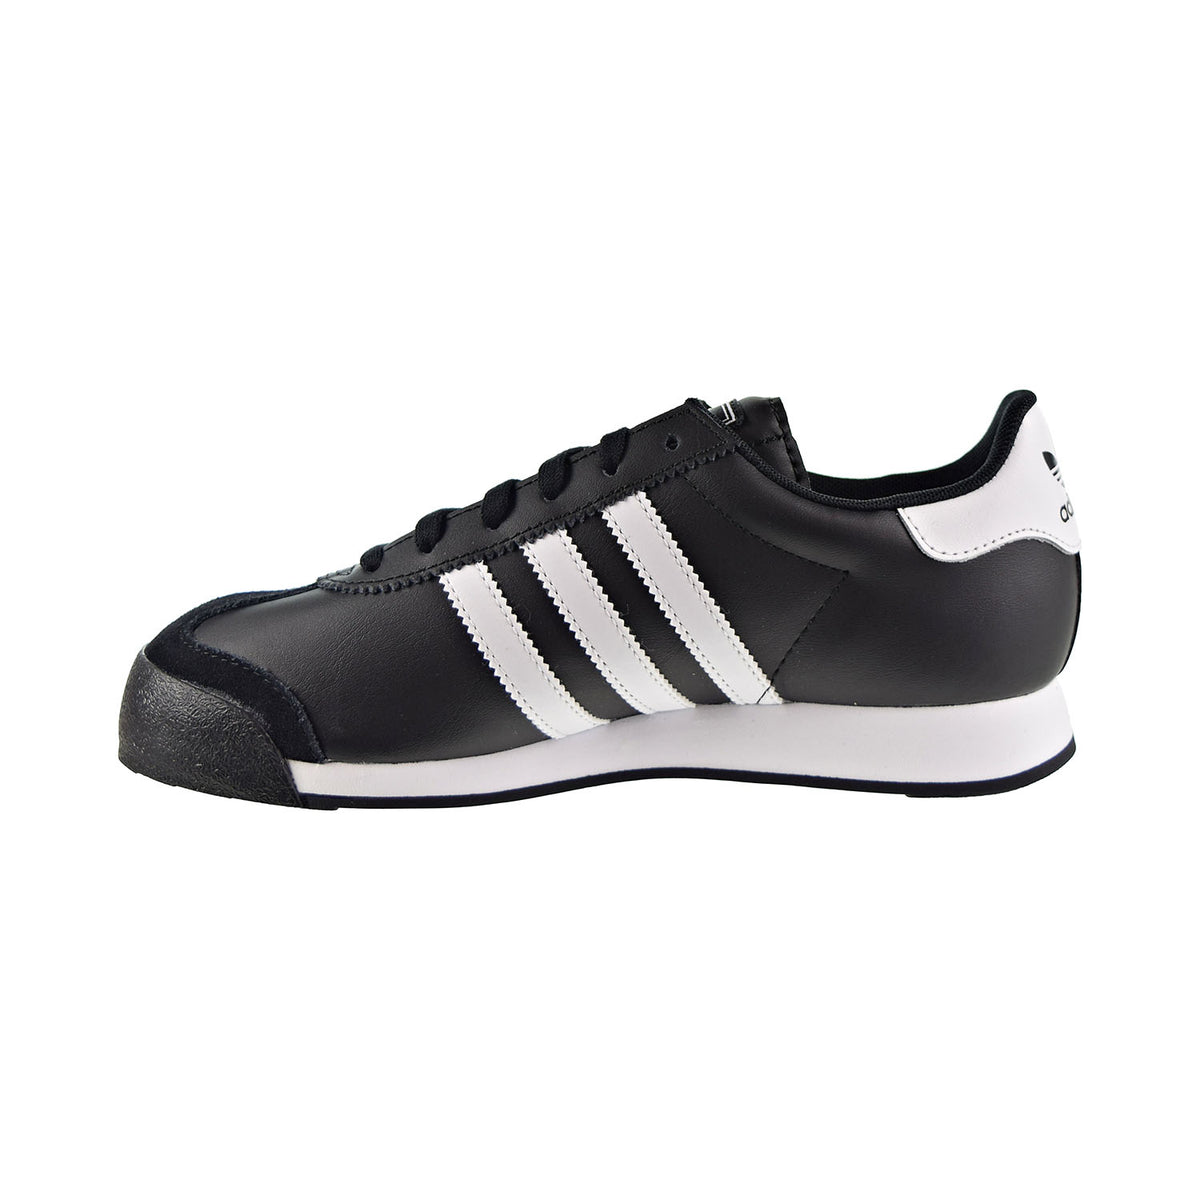 Eenvoud Bederven middelen Adidas Samoa Big Kids' Shoes Black/White/Black